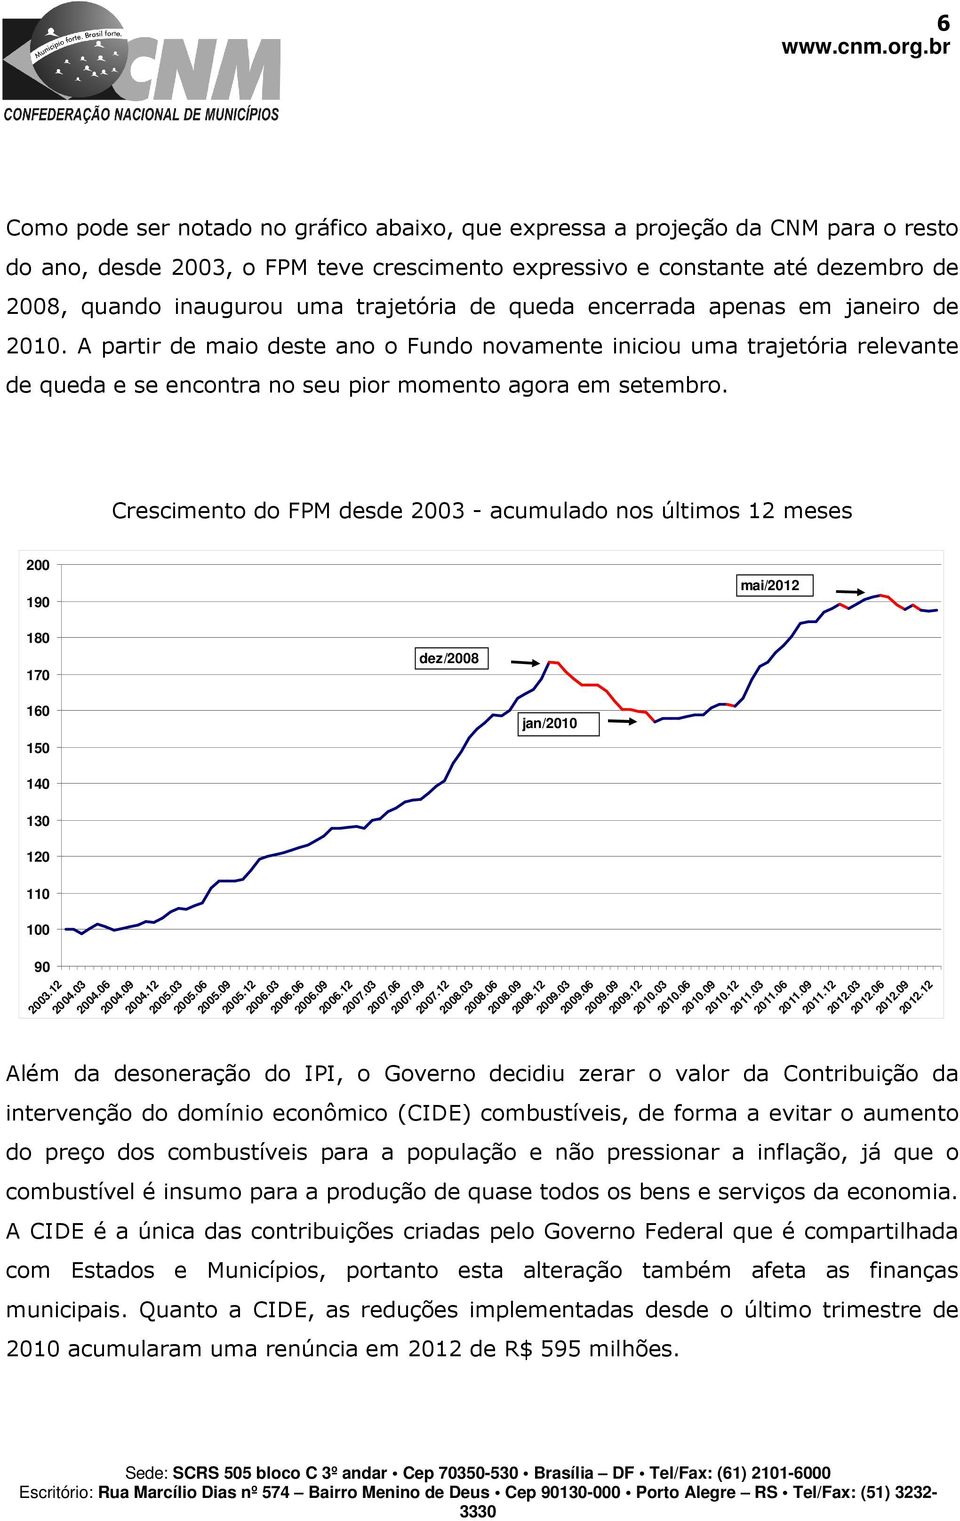 Crescimento do FPM desde 2003 - acumulado nos últimos 12 meses 200 190 mai/2012 180 170 dez/2008 160 150 140 130 120 110 100 90 2003.12 2004.03 jan/2010 2004.06 2004.09 2004.12 2005.03 2005.06 2005.